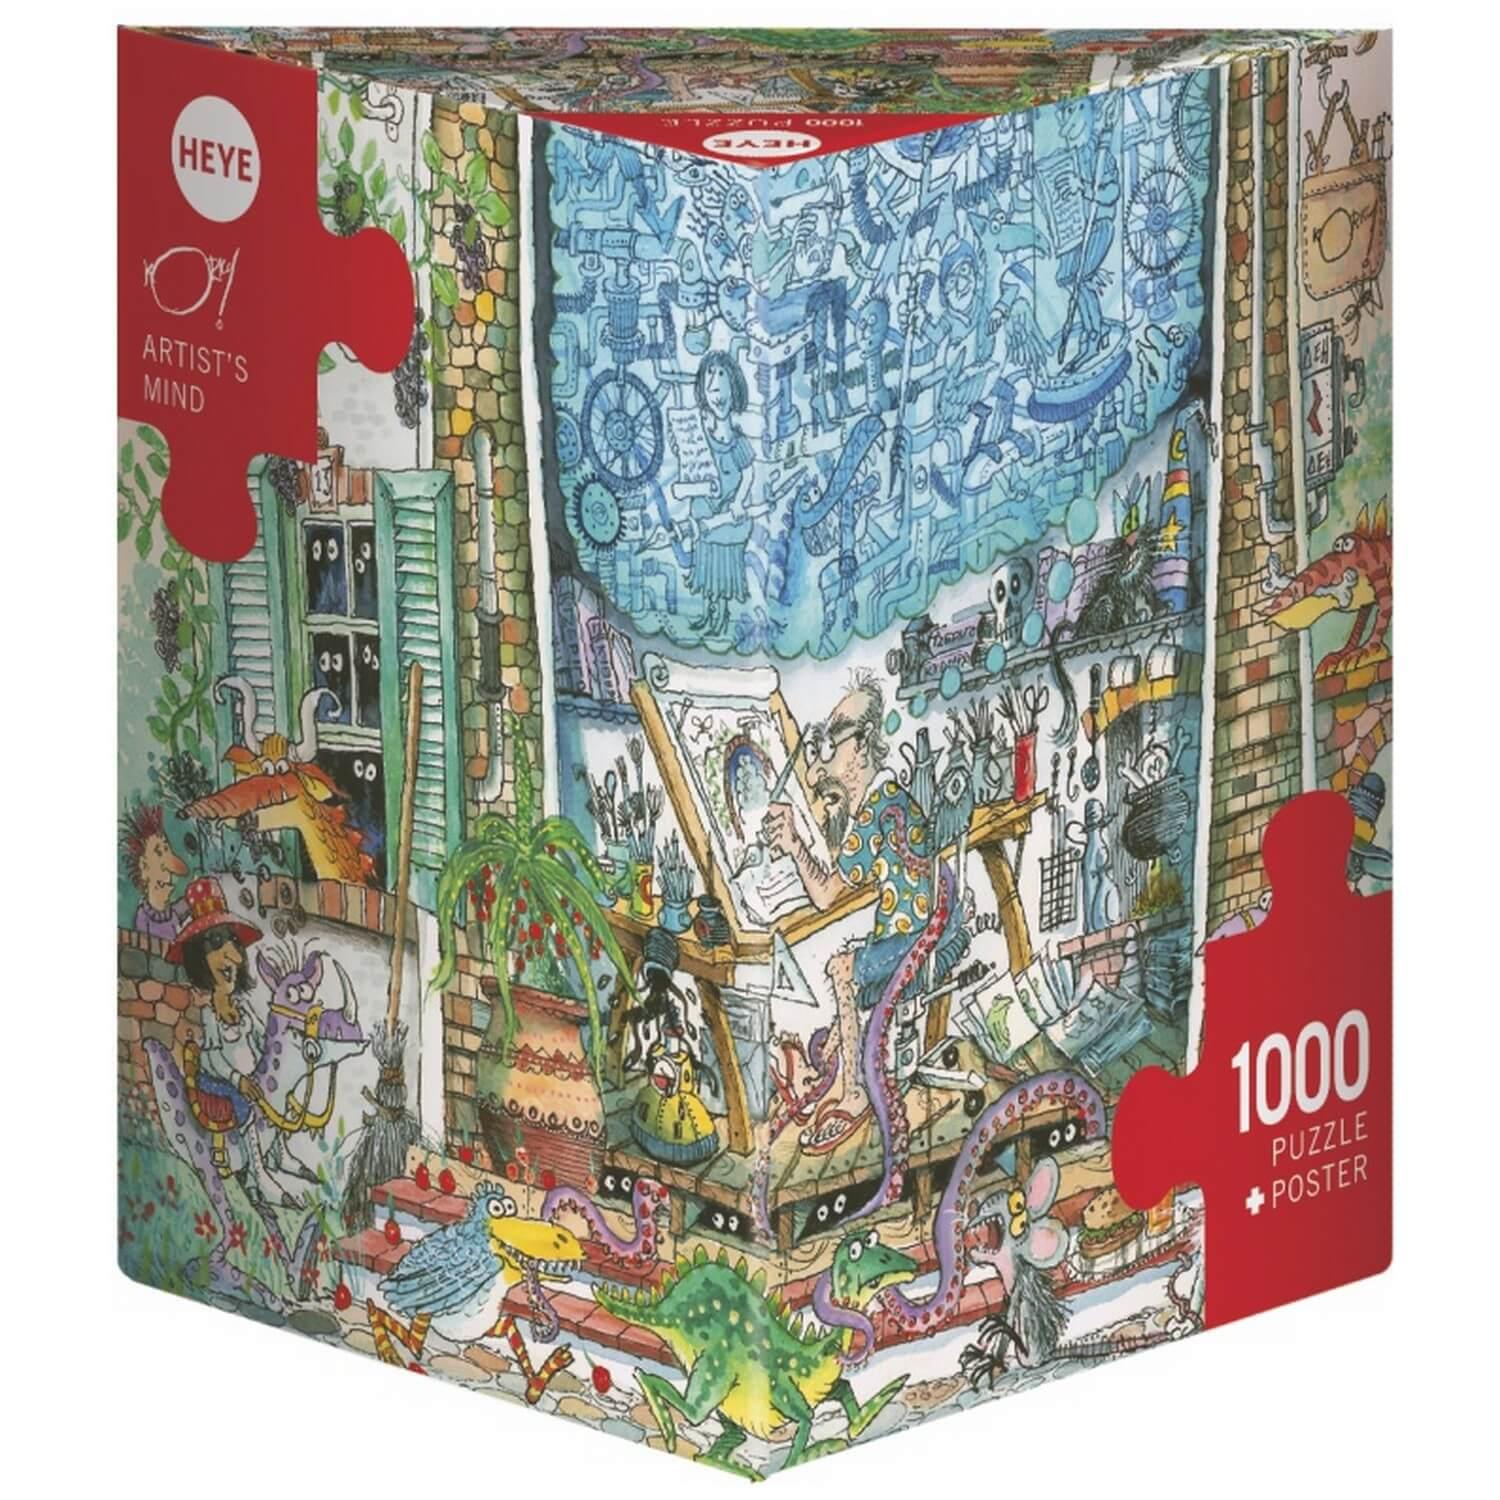 Puzzle 1000 pièces : Esprit d'artiste - Heye - Rue des Puzzles